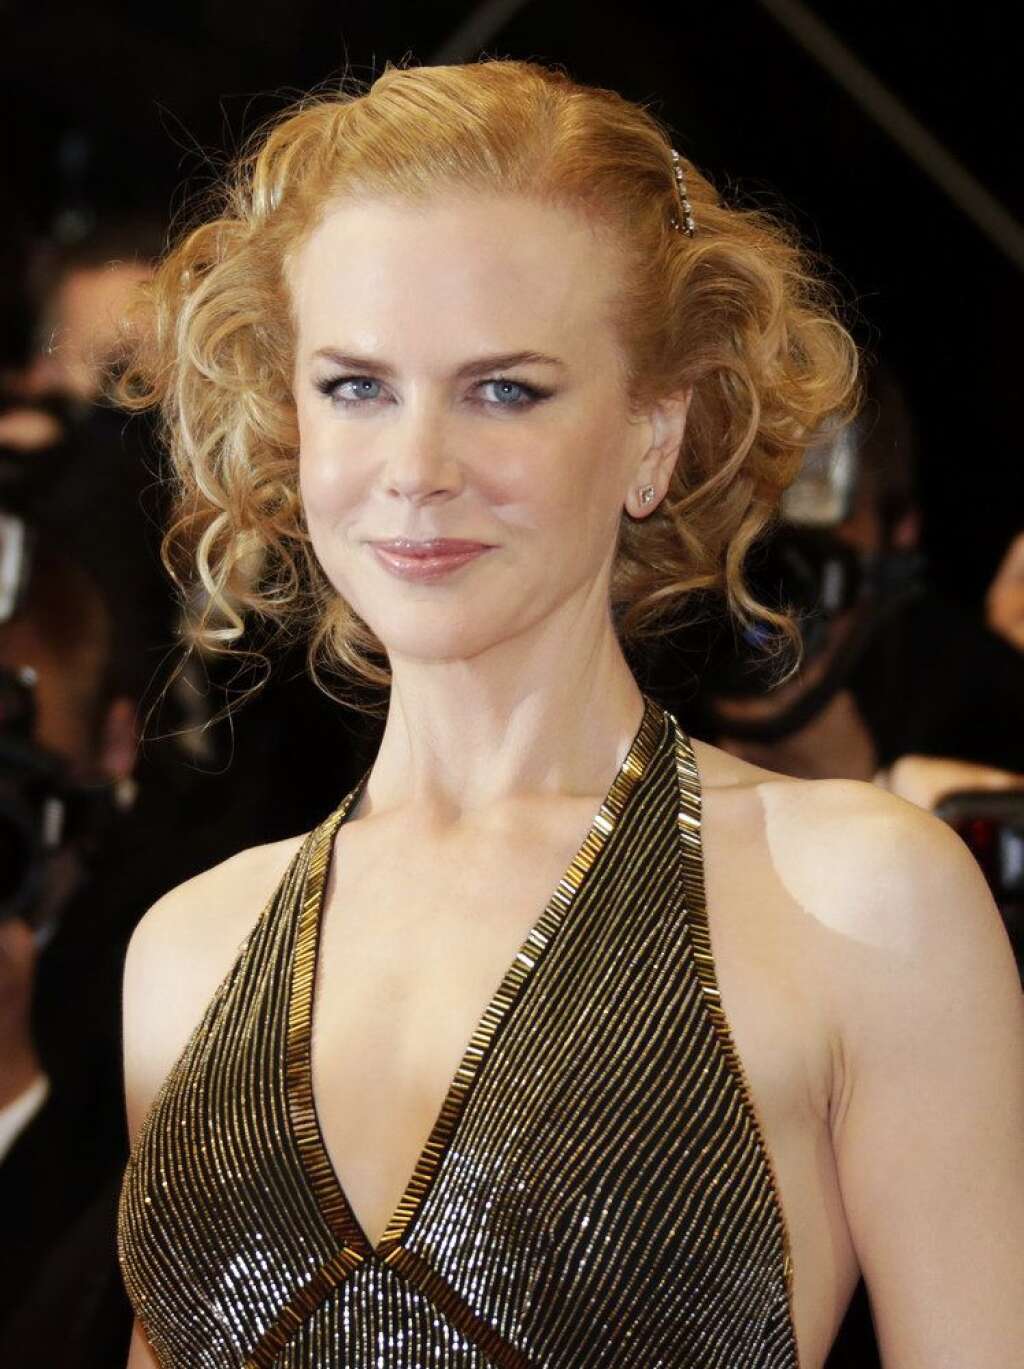 Nicole Kidman - L'actrice américaine Nicole Kidman a été couronnée d'un Oscar en 2003 pour "The Hours". Elle est venue plusieurs fois à Cannes comme en 2001 présenter le film "Moulin Rouge". En 2003, elle défendait "Dogville" de Lars von Trier et l'an dernier "Paper boy" de Lee Daniels. Après "Stoker" dans les salles françaises le 1er mai, l'actrice sera à l'affiche à la fin de l'année dans le très attendu biopic "Grace de Monaco".